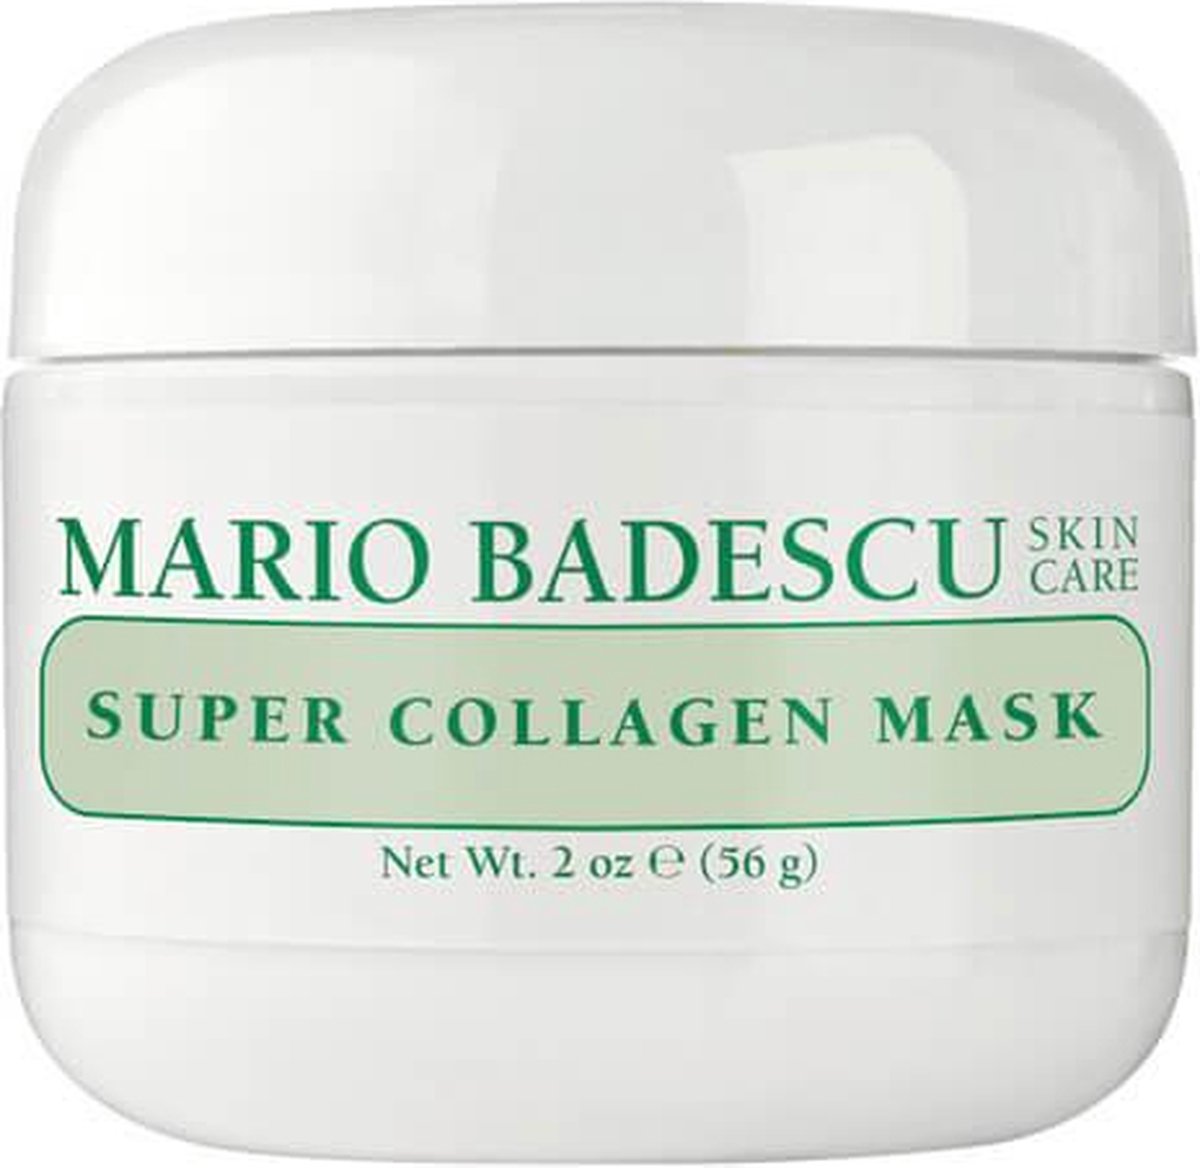 Mario Badescu - Super Collagen Mask - 59 ml